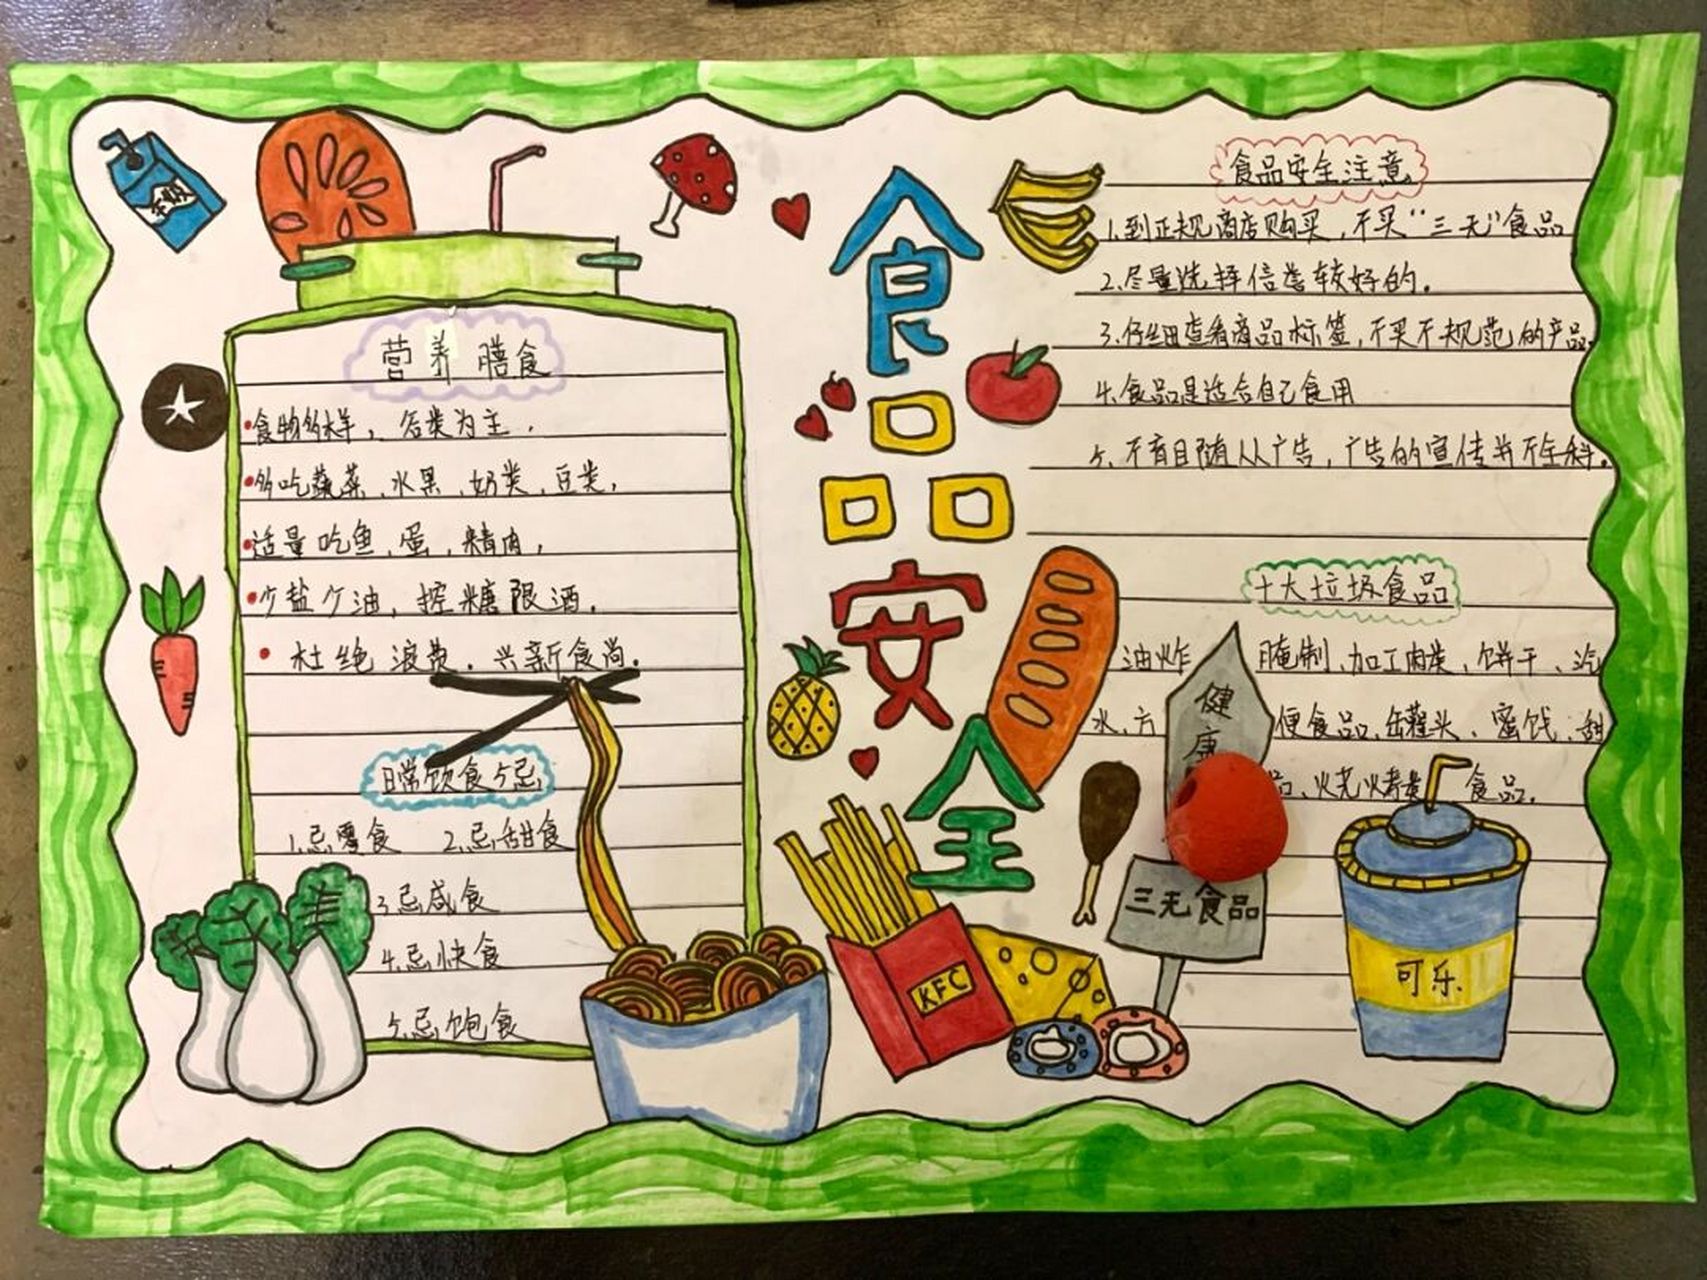 食品安全手抄报 分享二年级小朋友画的《食品安全手抄报》》平台找的